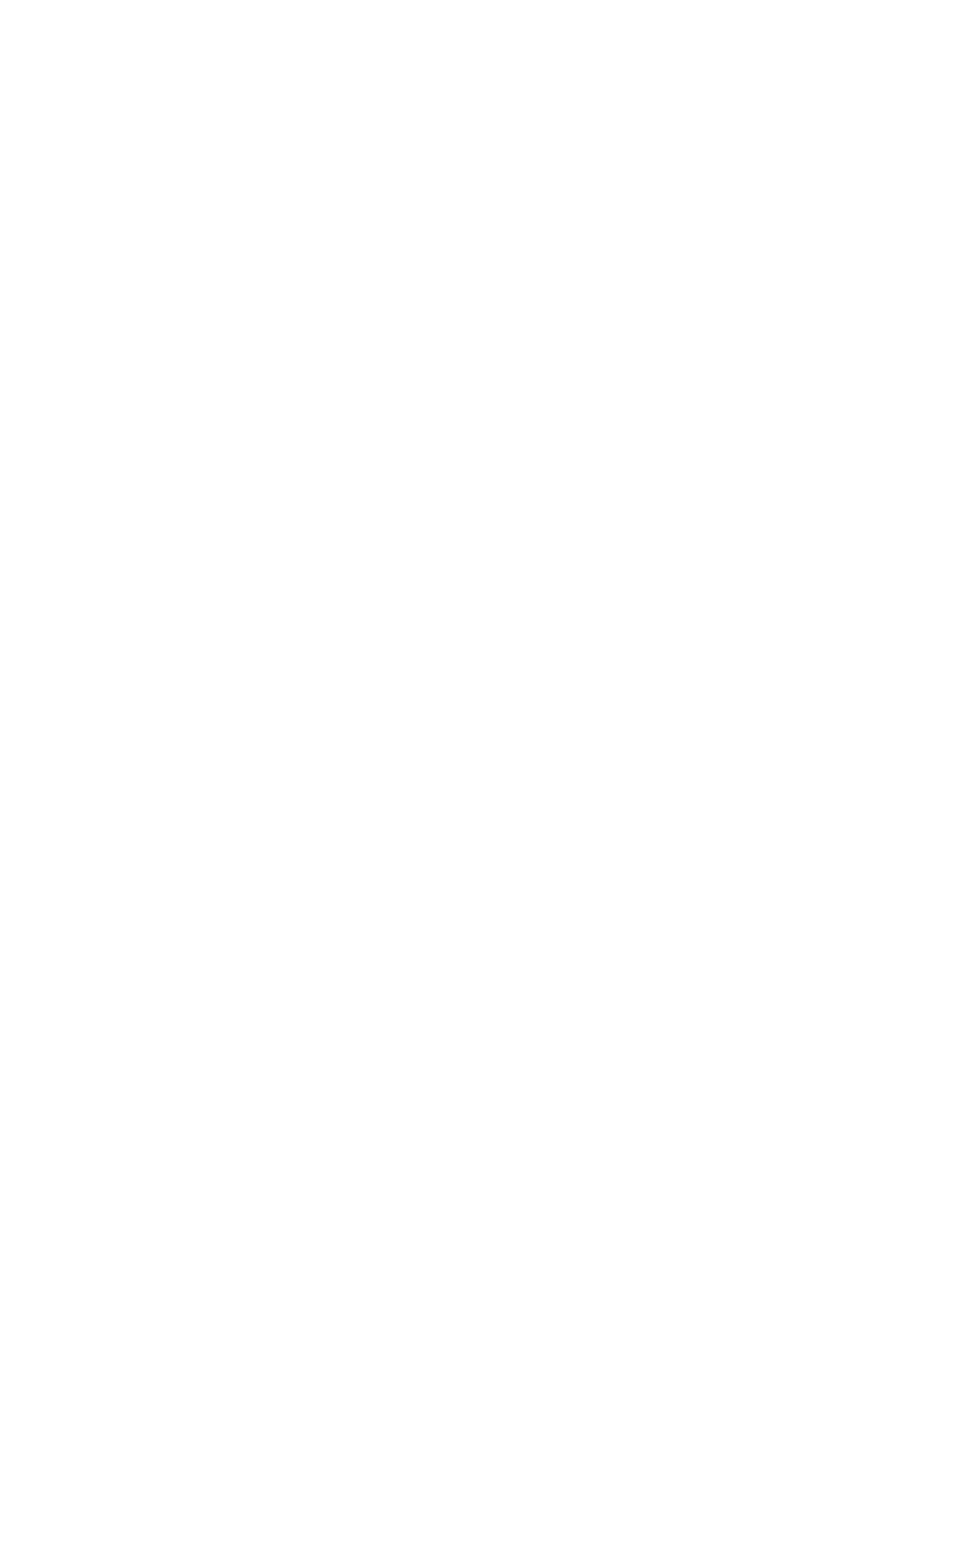 Finance House logo pour fonds sombres (PNG transparent)